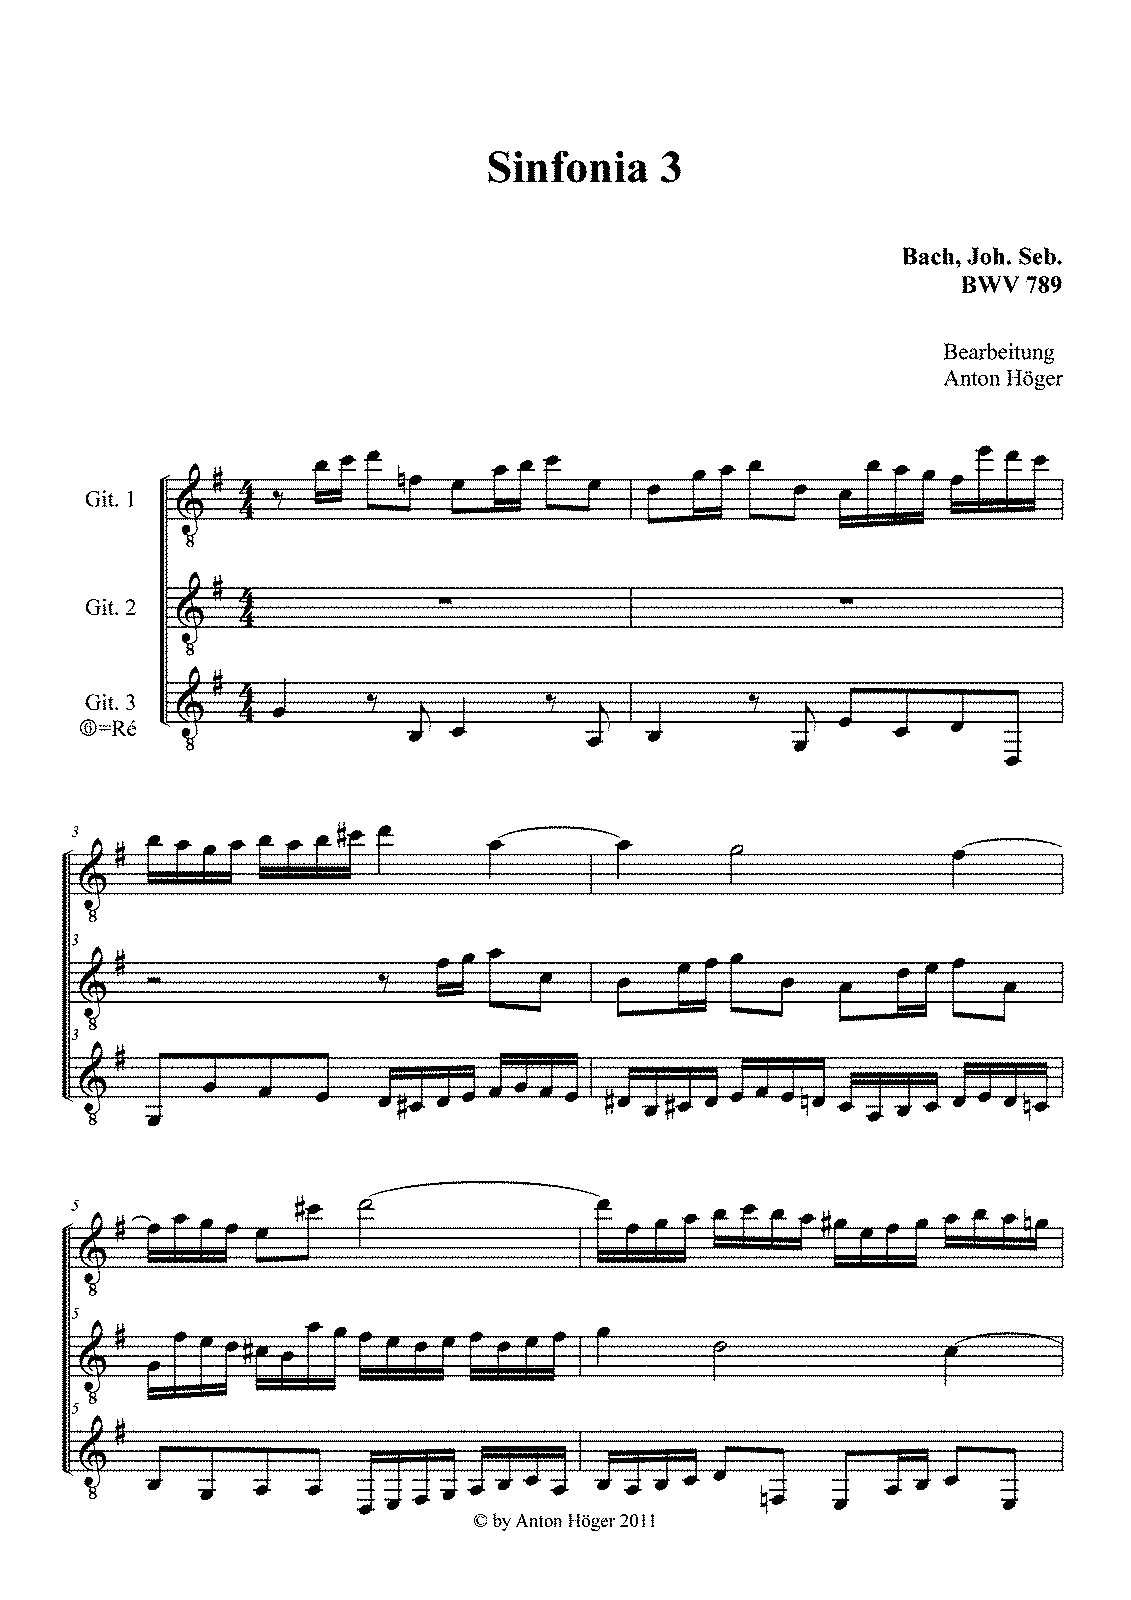 Sinfonia in D major, BWV 789 (Bach, Johann Sebastian) - IMSLP